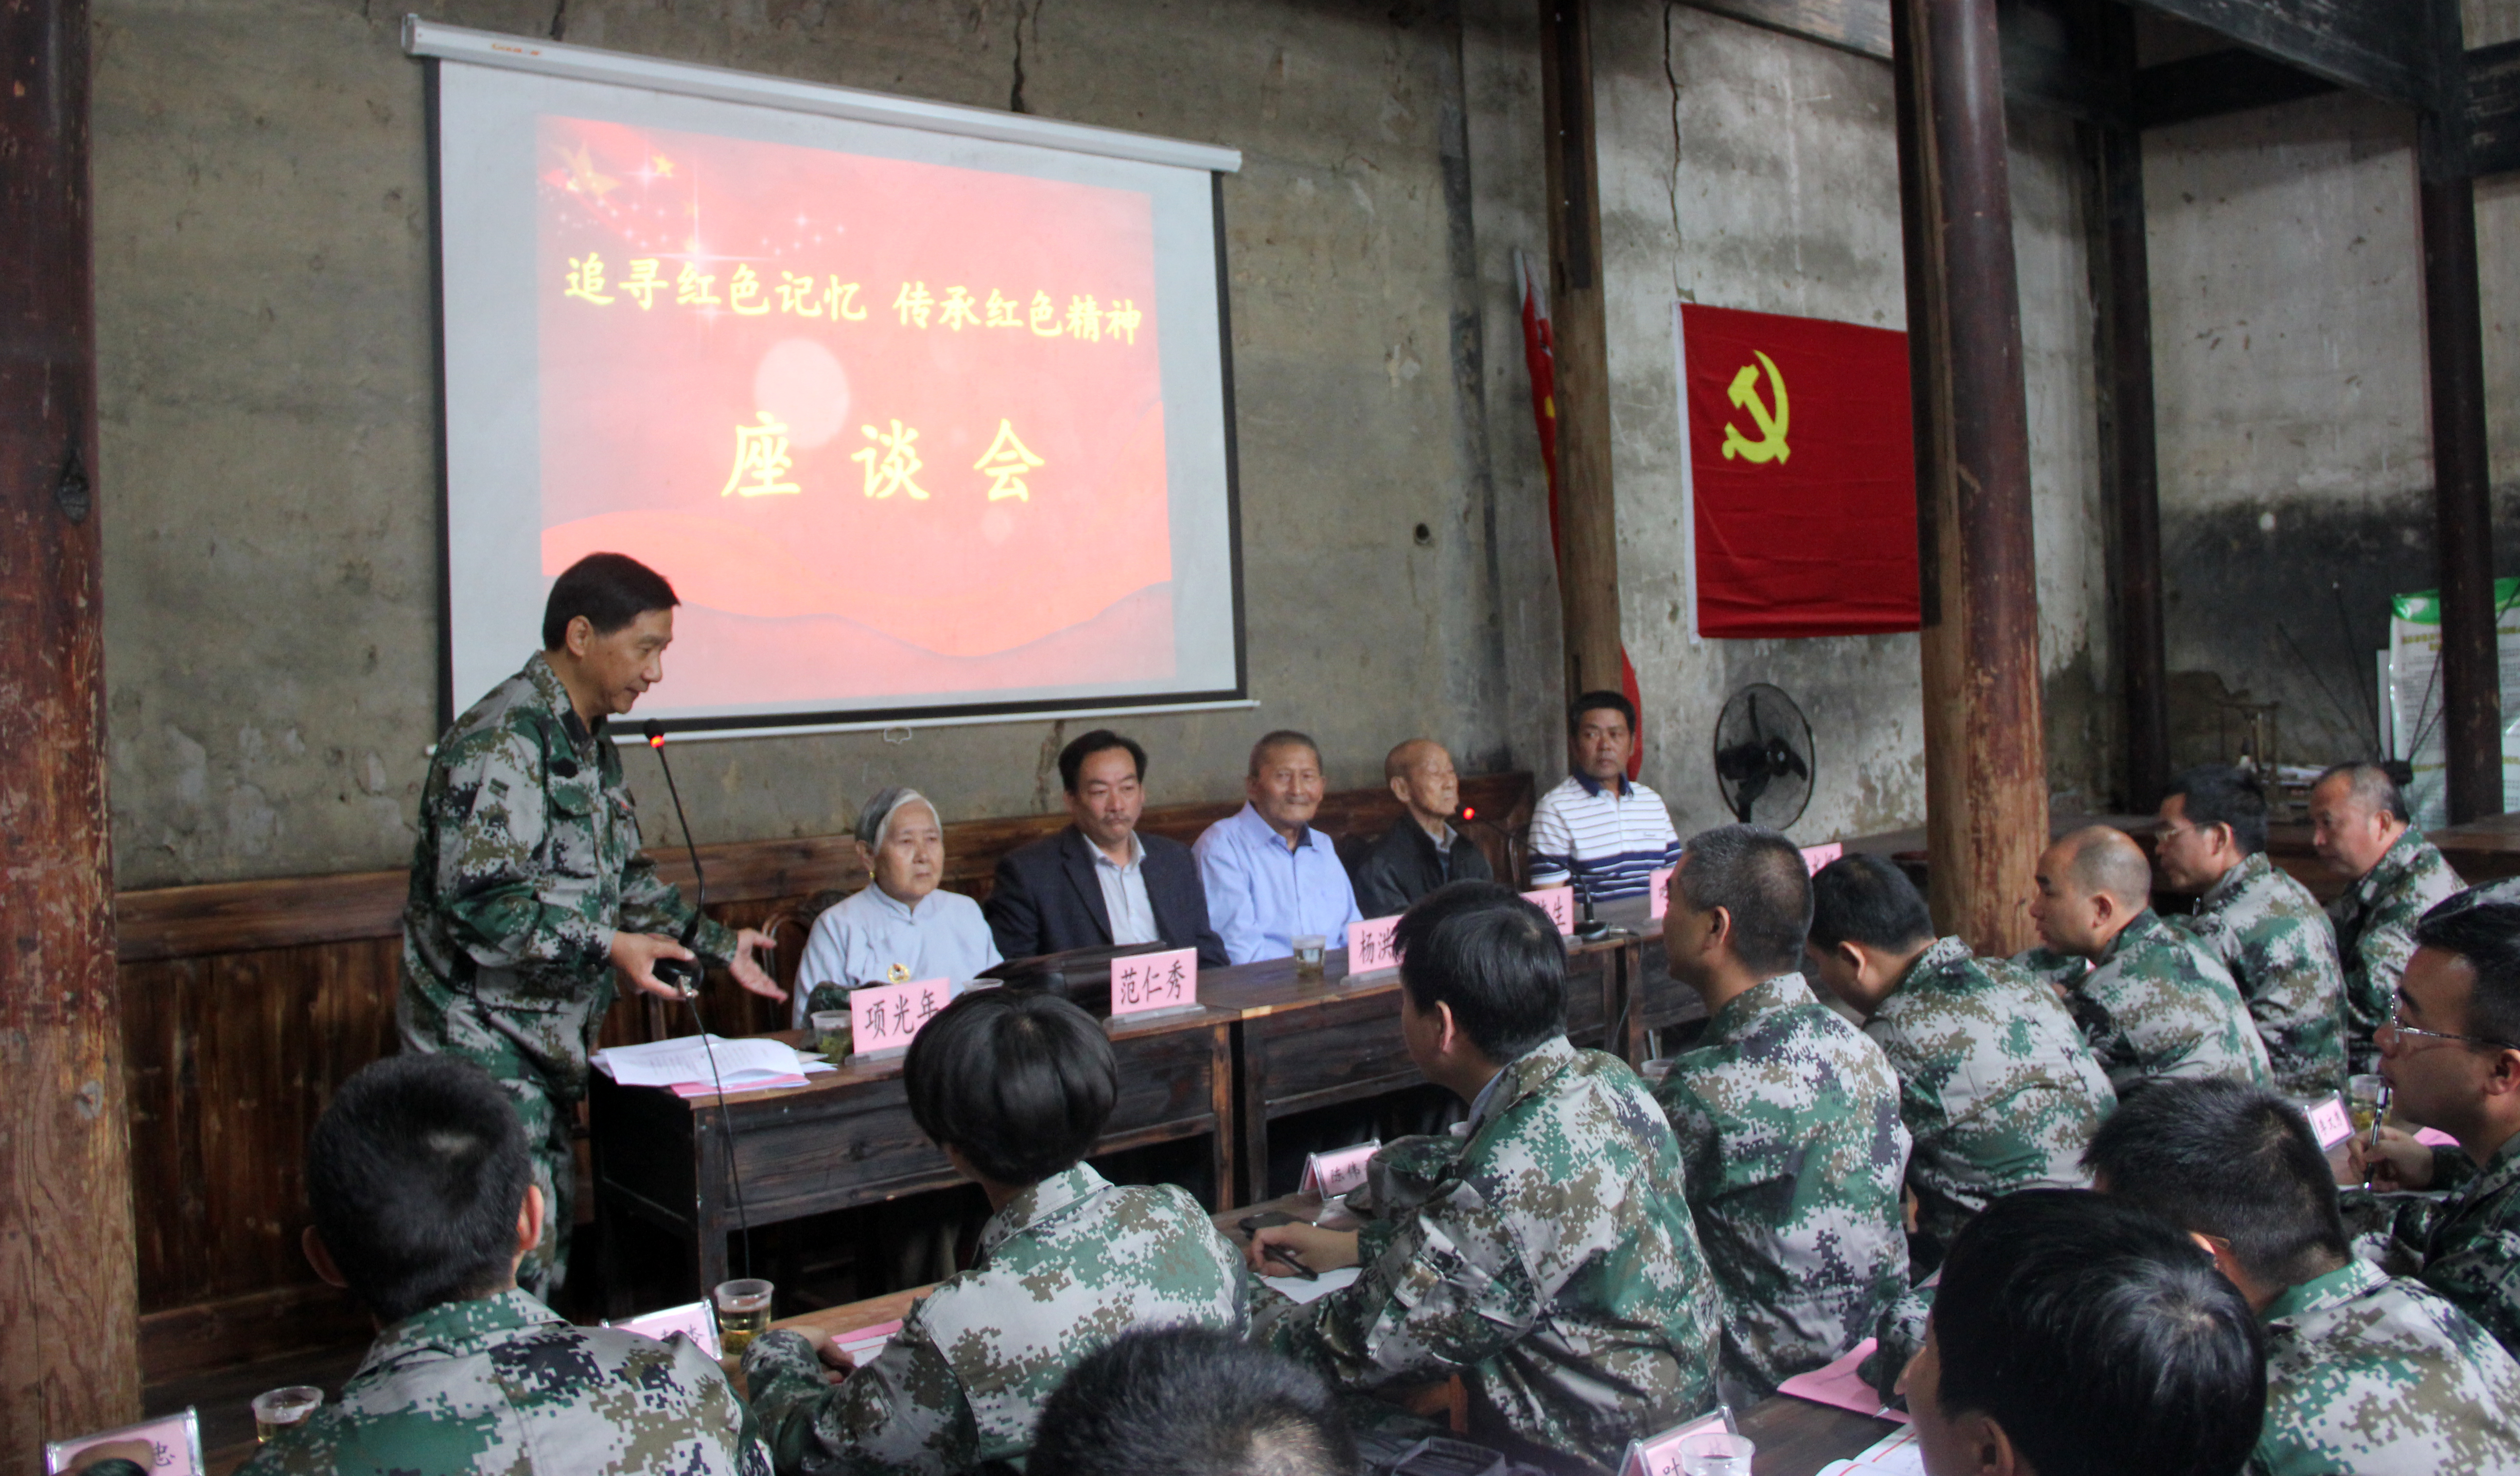 龙泉市55名乡镇（街道）党员干部在“红色学堂”接受“两学一做”特殊教育。潘枫、刘铭伟 摄.jpg